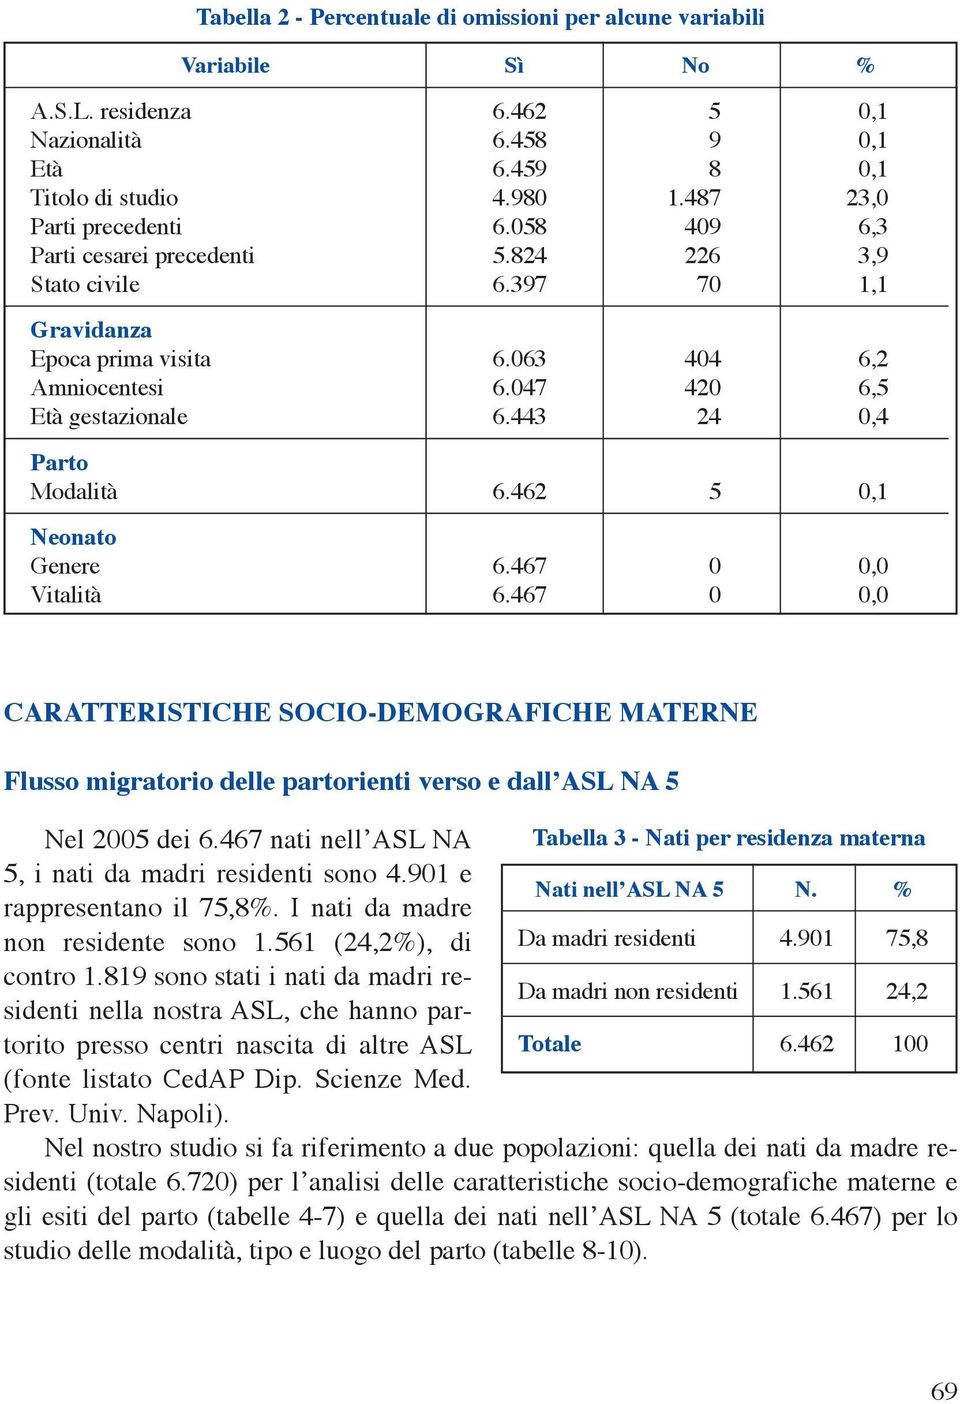 462 5 0,1 Neonato Genere 6.467 0 0,0 Vitalità 6.467 0 0,0 CARATTERISTICHE SOCIO-DEMOGRAFICHE MATERNE Flusso migratorio delle partorienti verso e dall ASL NA 5 Nel 2005 dei 6.